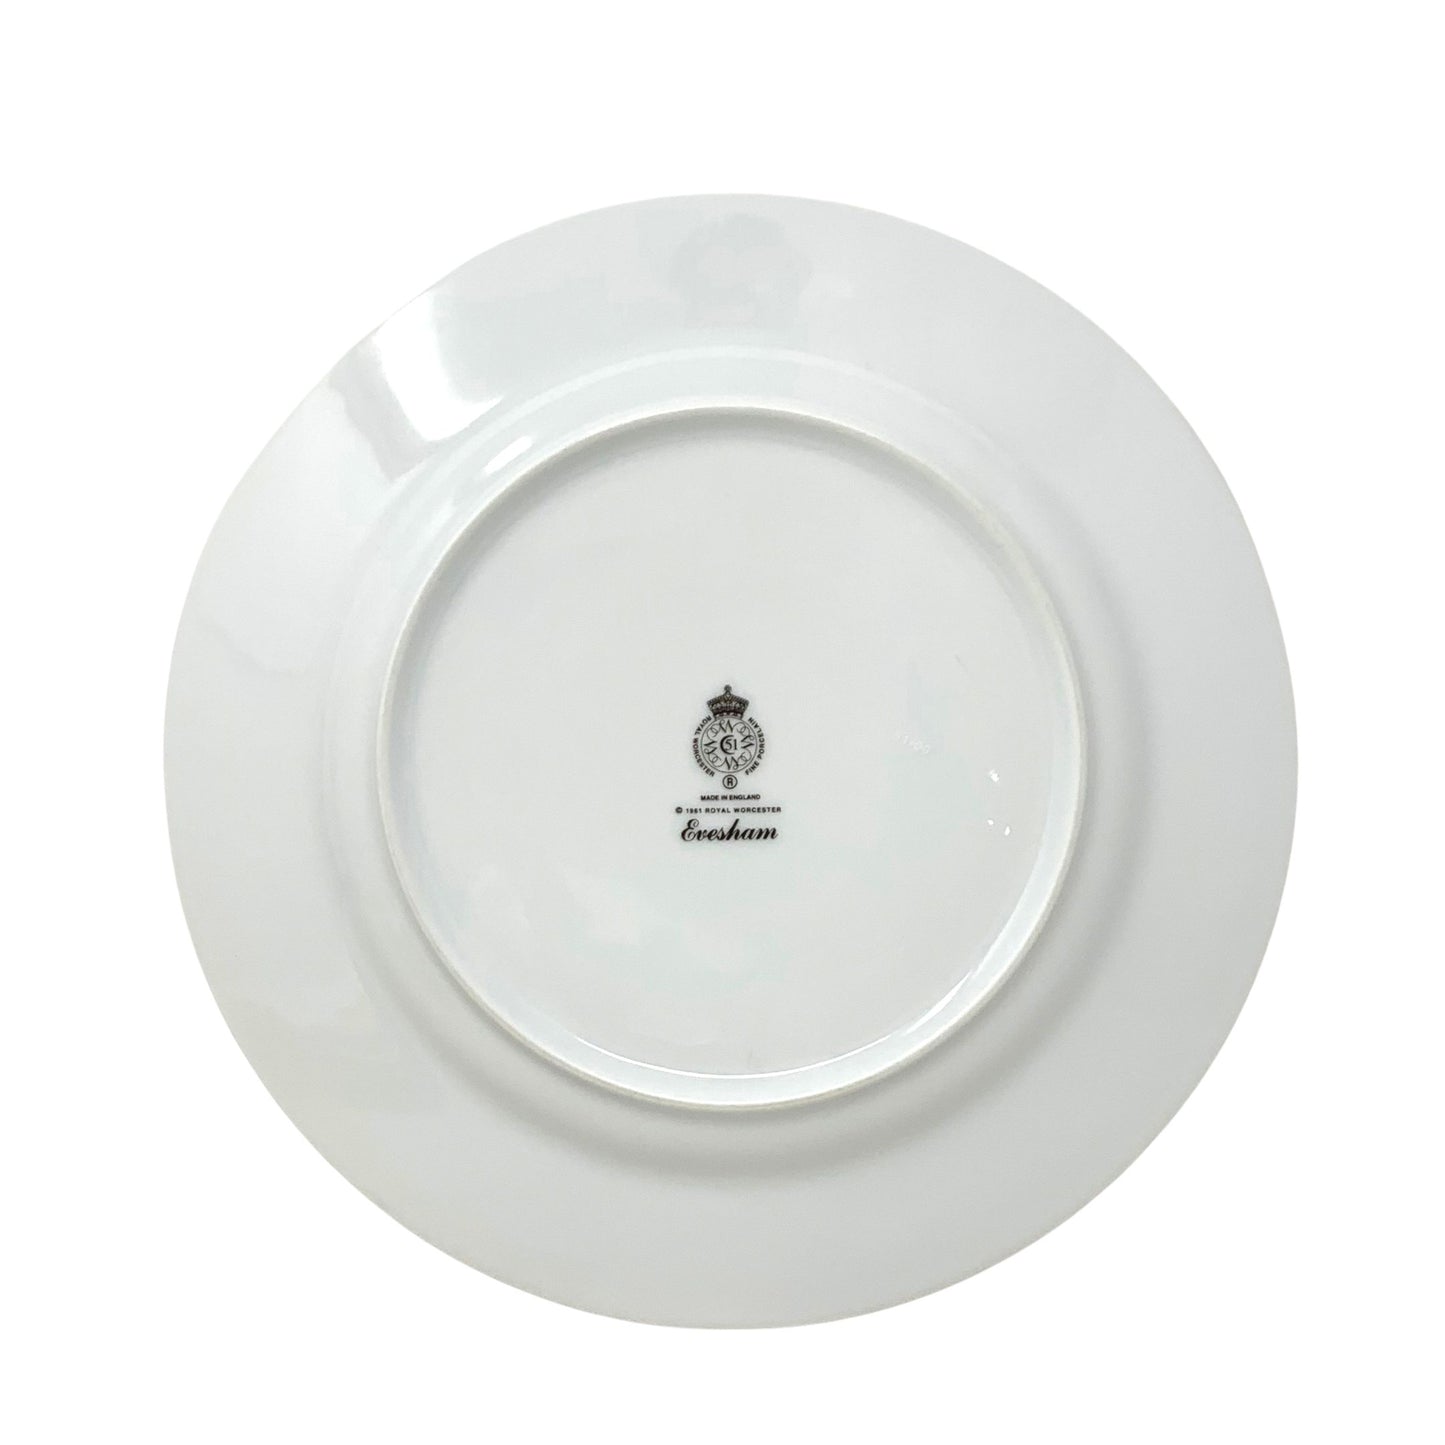 Royal Worcester "Evesham" Gold Dinner Plates (4)